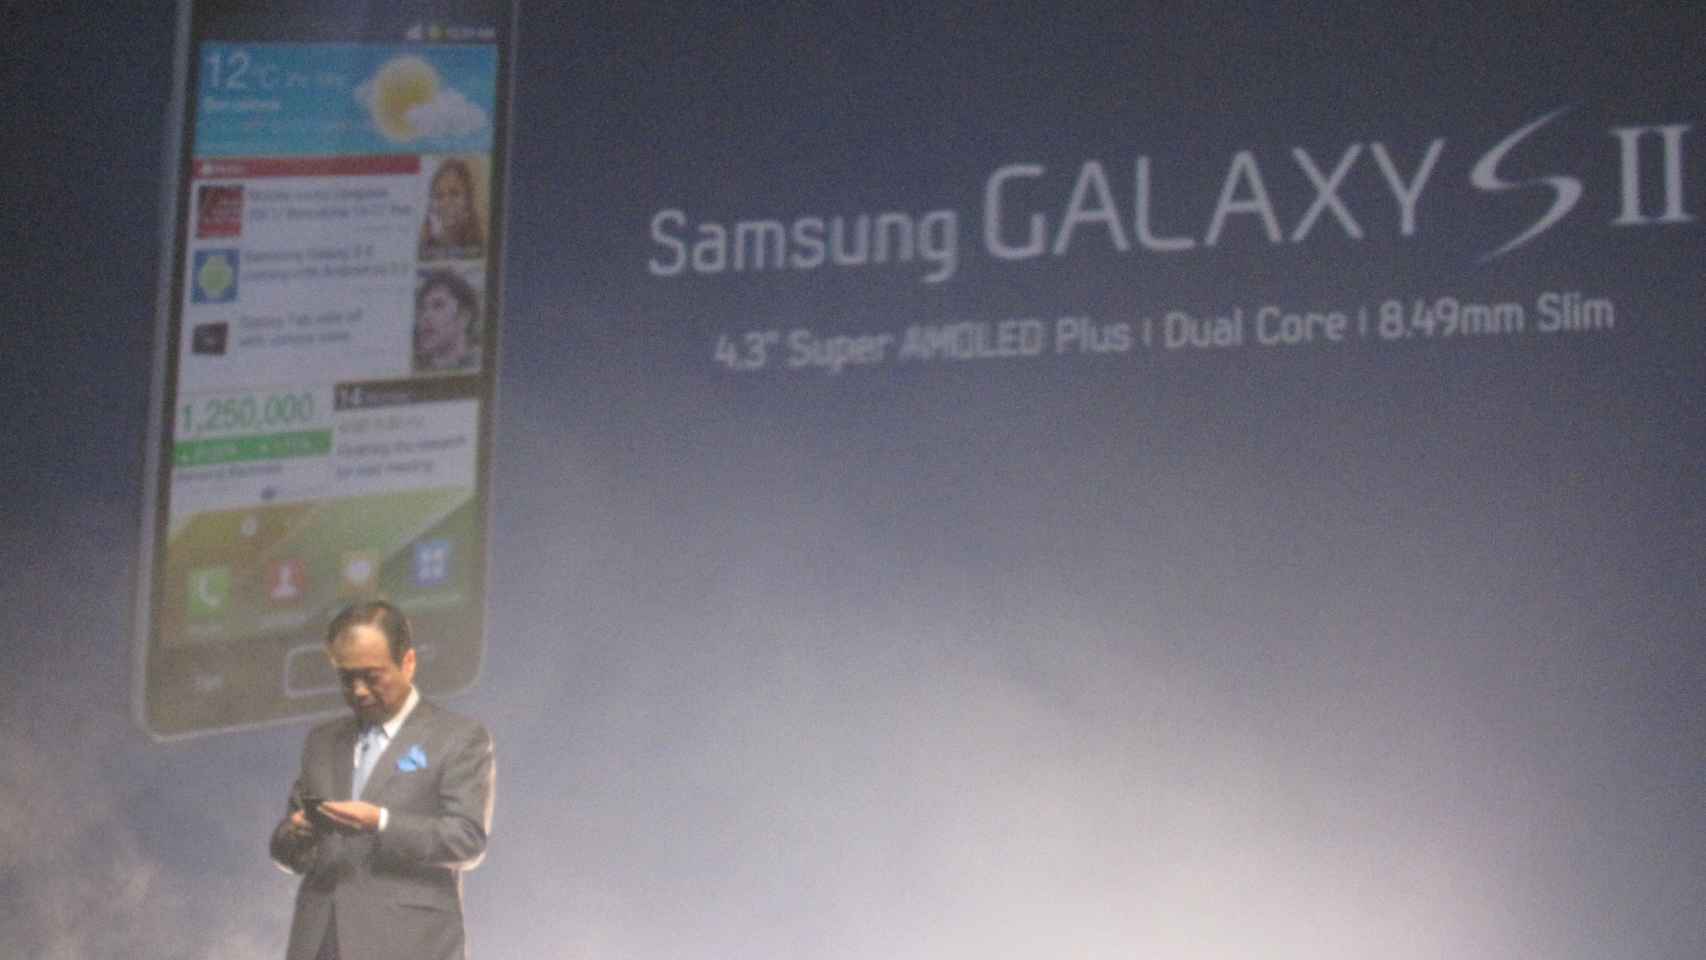 MWC 2011: La keynote de Samsung desde dentro y primer contacto con los nuevos Galaxy (fotos y vídeo exclusivos)